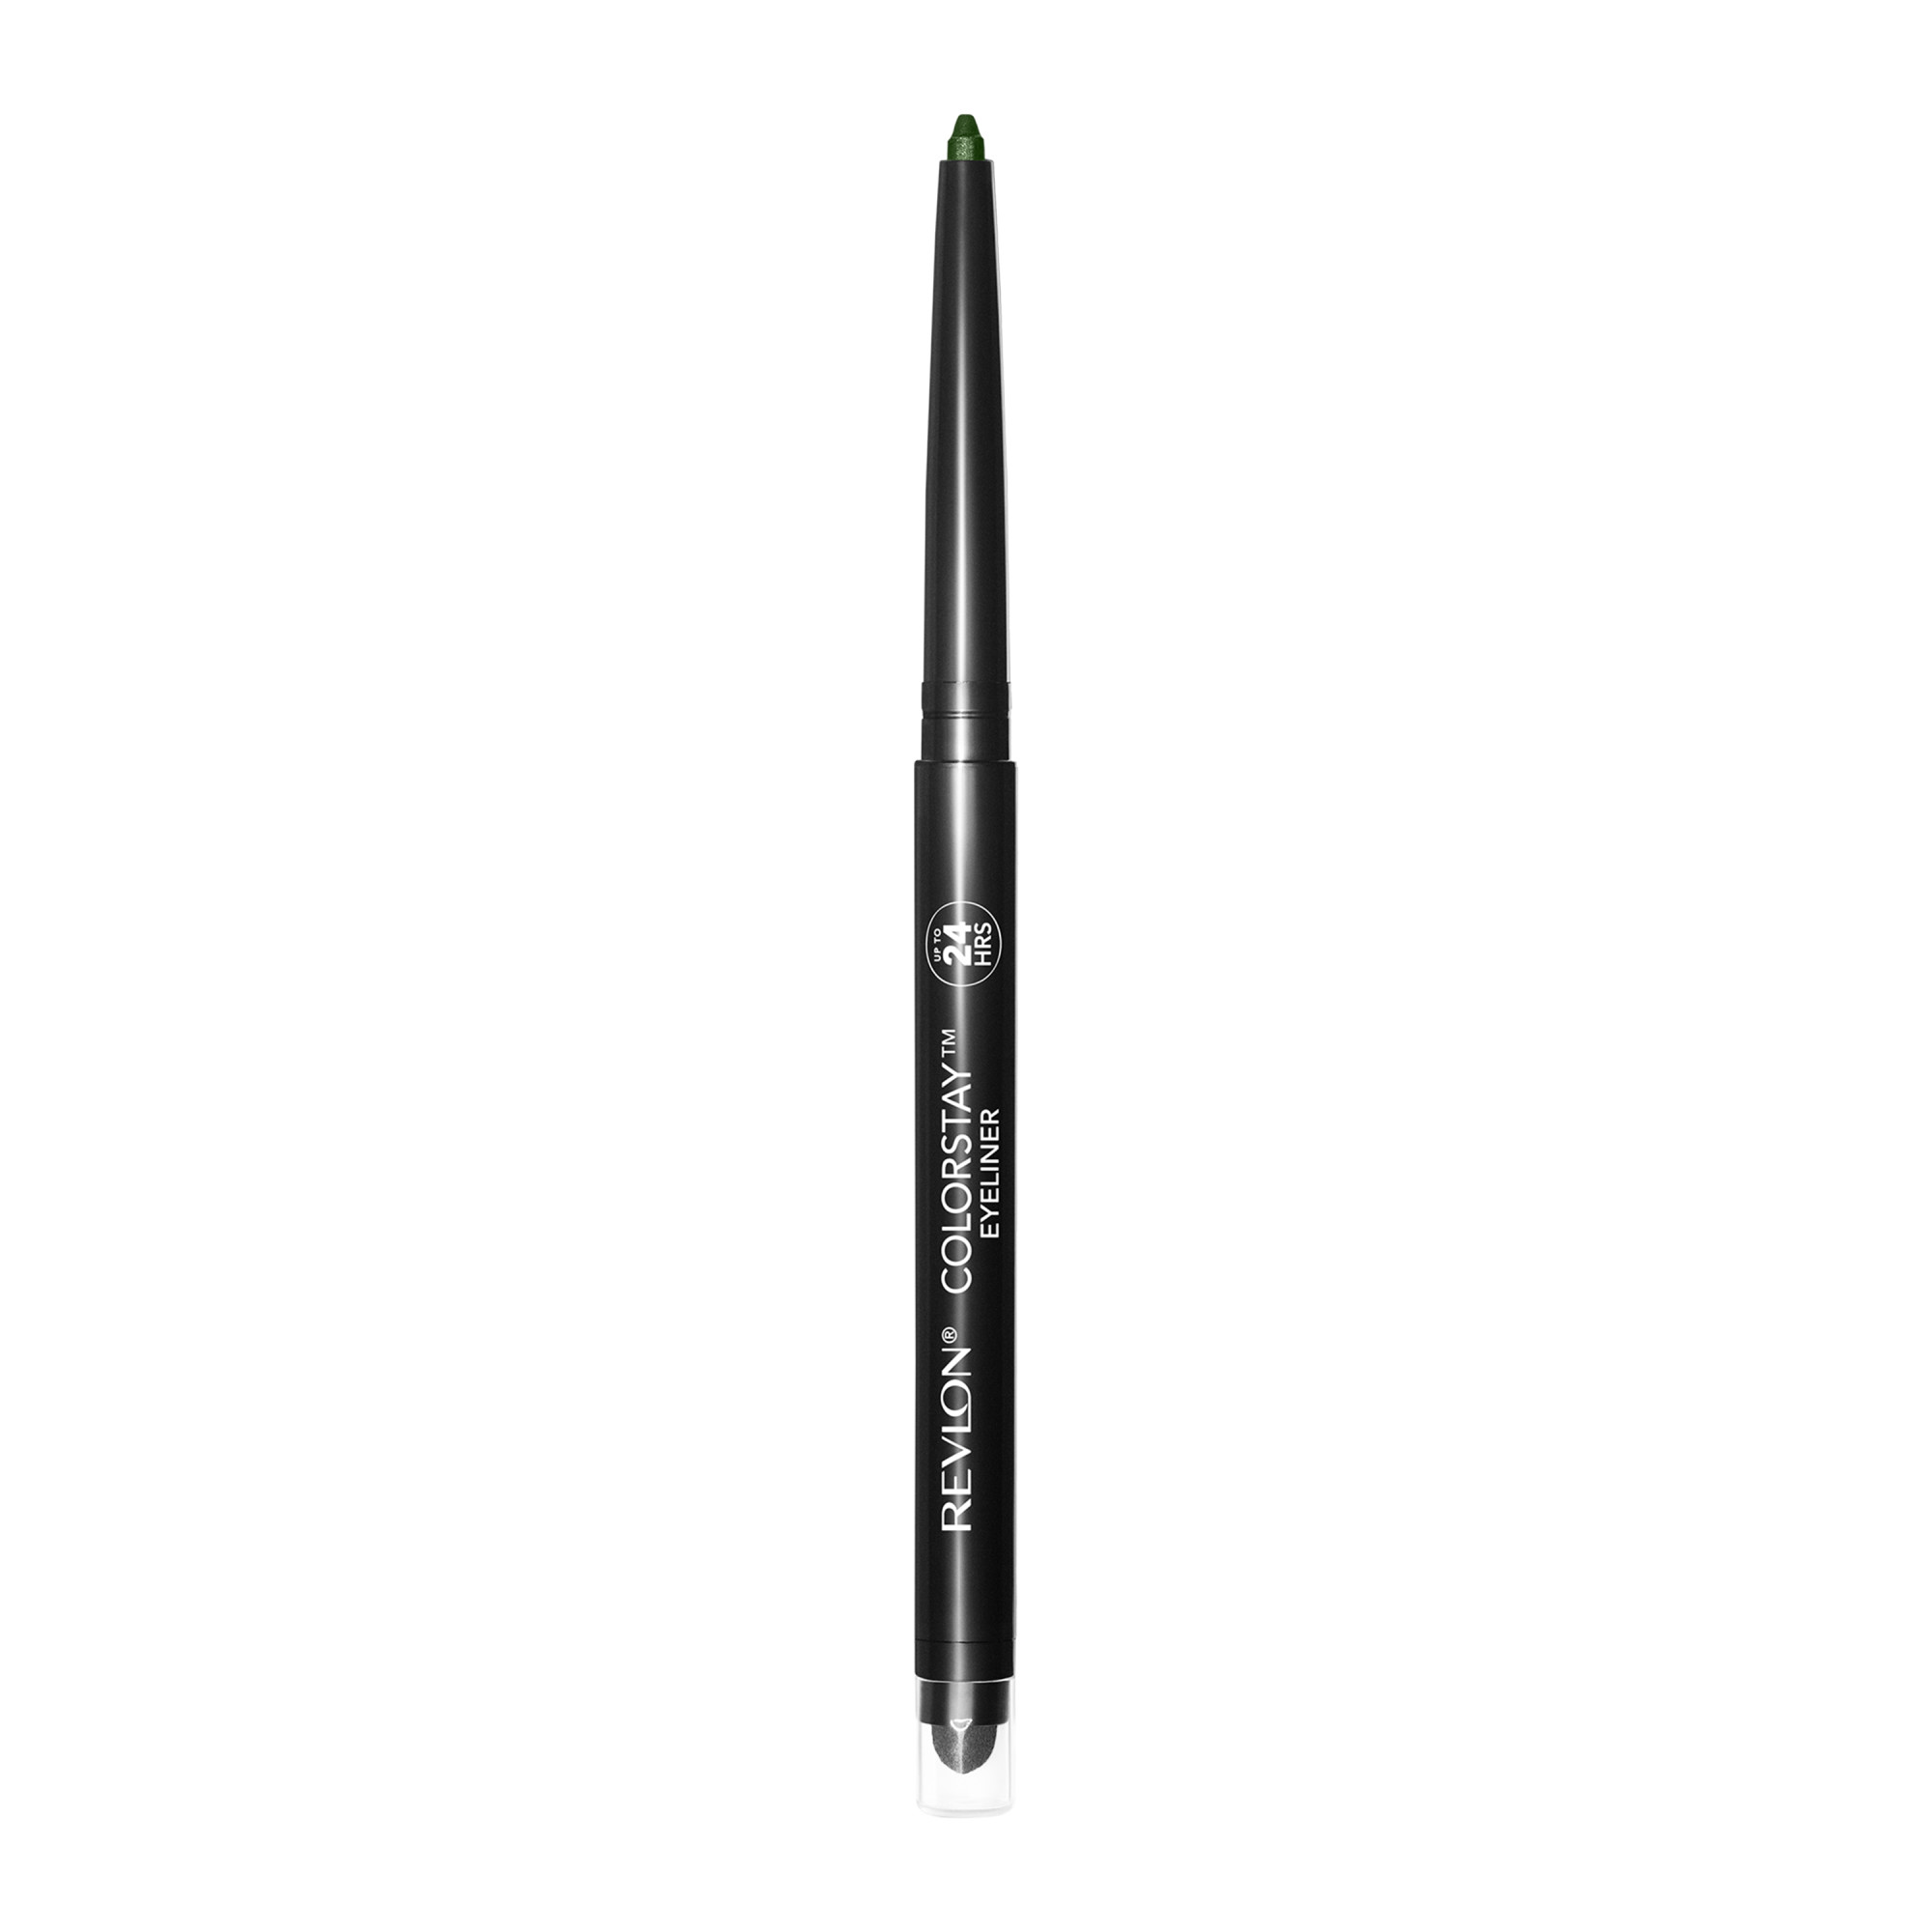 Revlon ColorStay Waterproof Eyeliner Pencil, 24HR Wear, Built-in Sharpener, 206 Jade, 0.01 oz - image 3 of 9